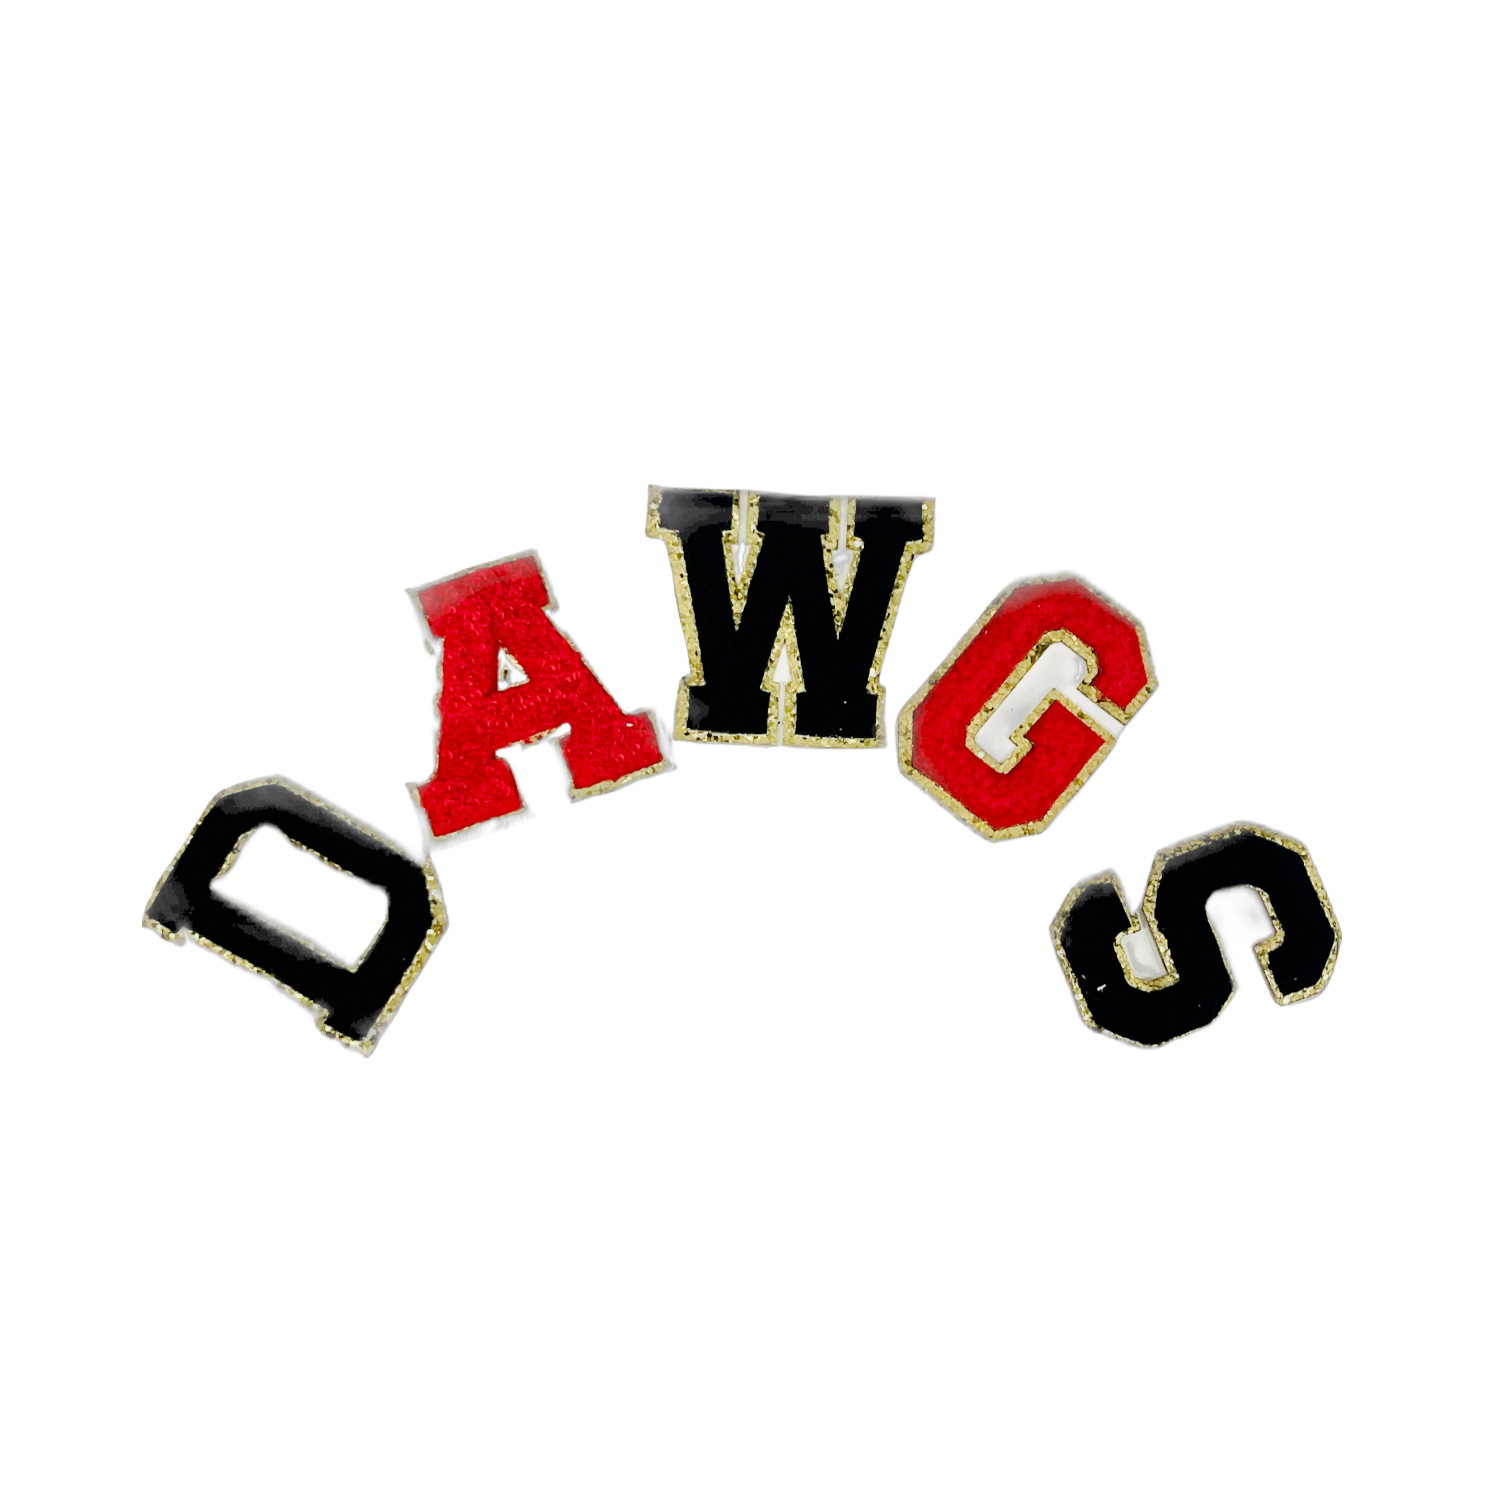 DAWGS patch letter bundle